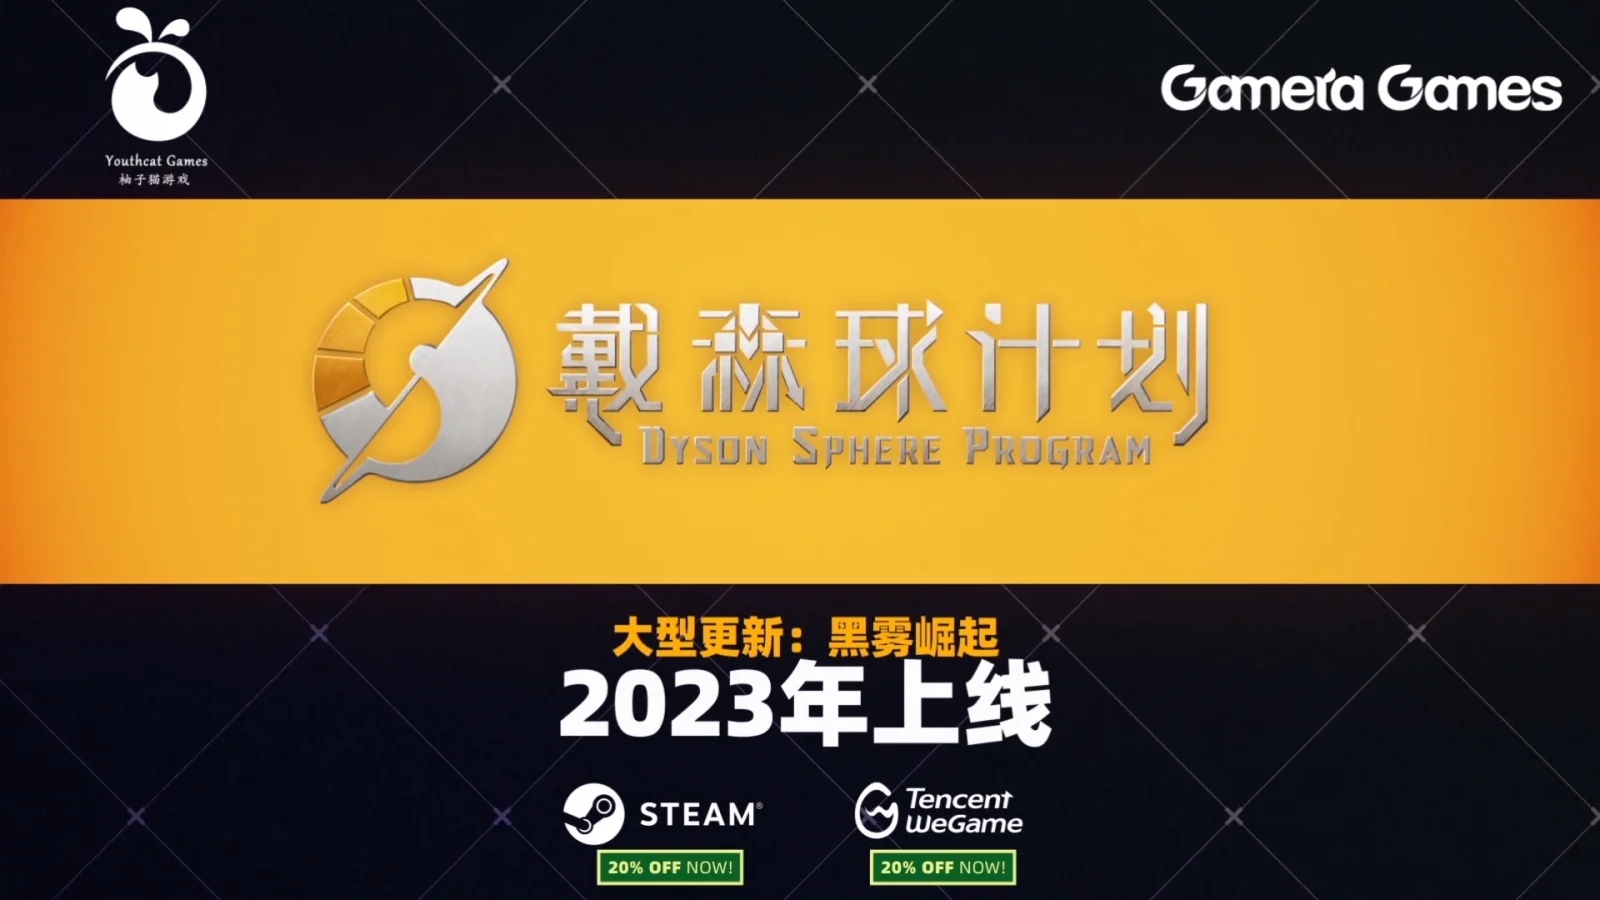 《戴森球计划》“黑雾崛起”更新将于2023年上线：Gamera Games东京电玩展特别节目汇总